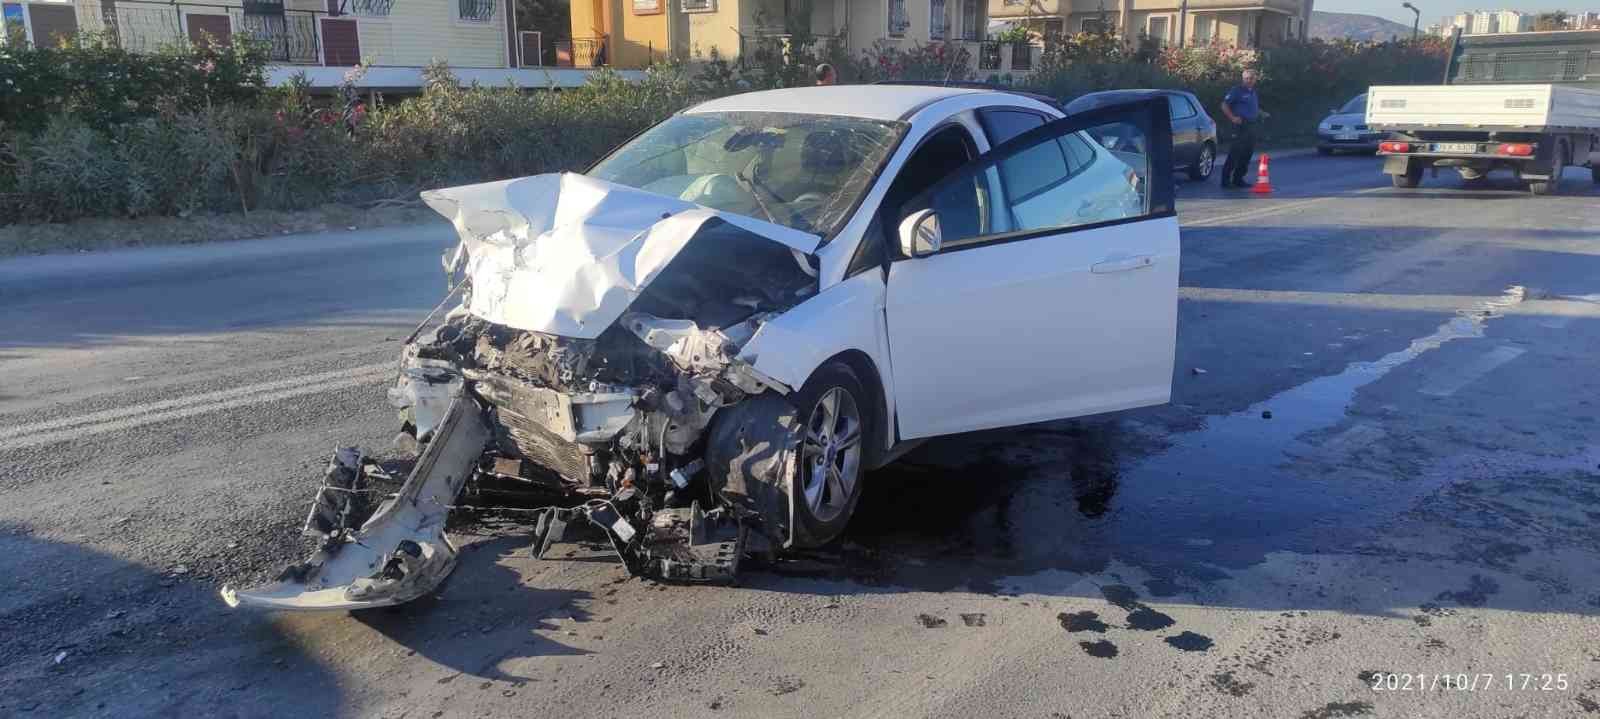 Kuşadası’nda trafik kazası: Biri yaya, 4 yaralı #aydin